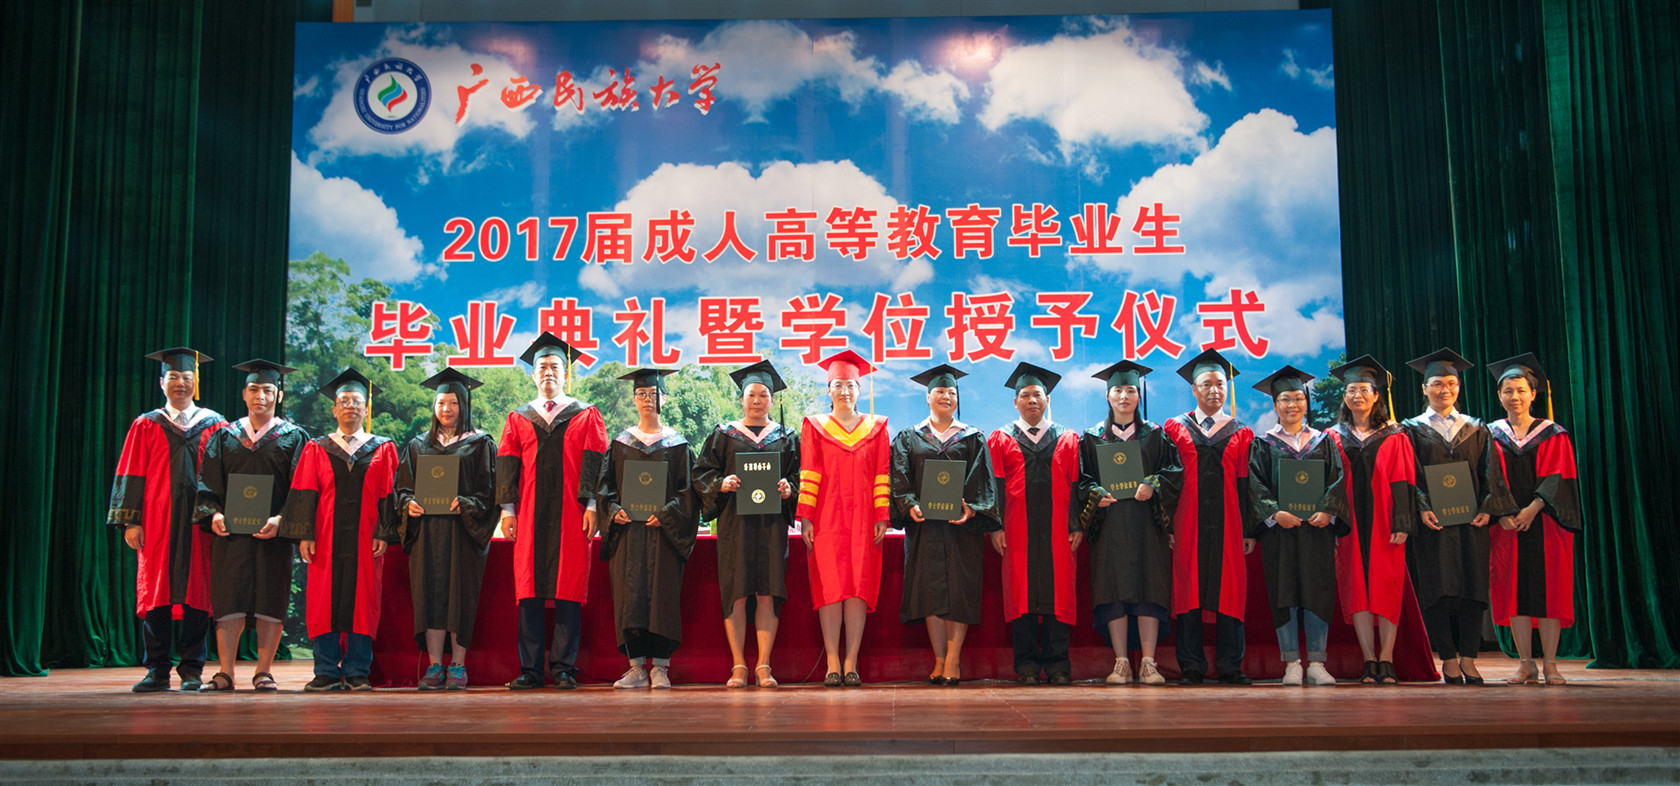 广西民族大学2017届成人高等教育毕业生毕业典礼暨学位授予仪式